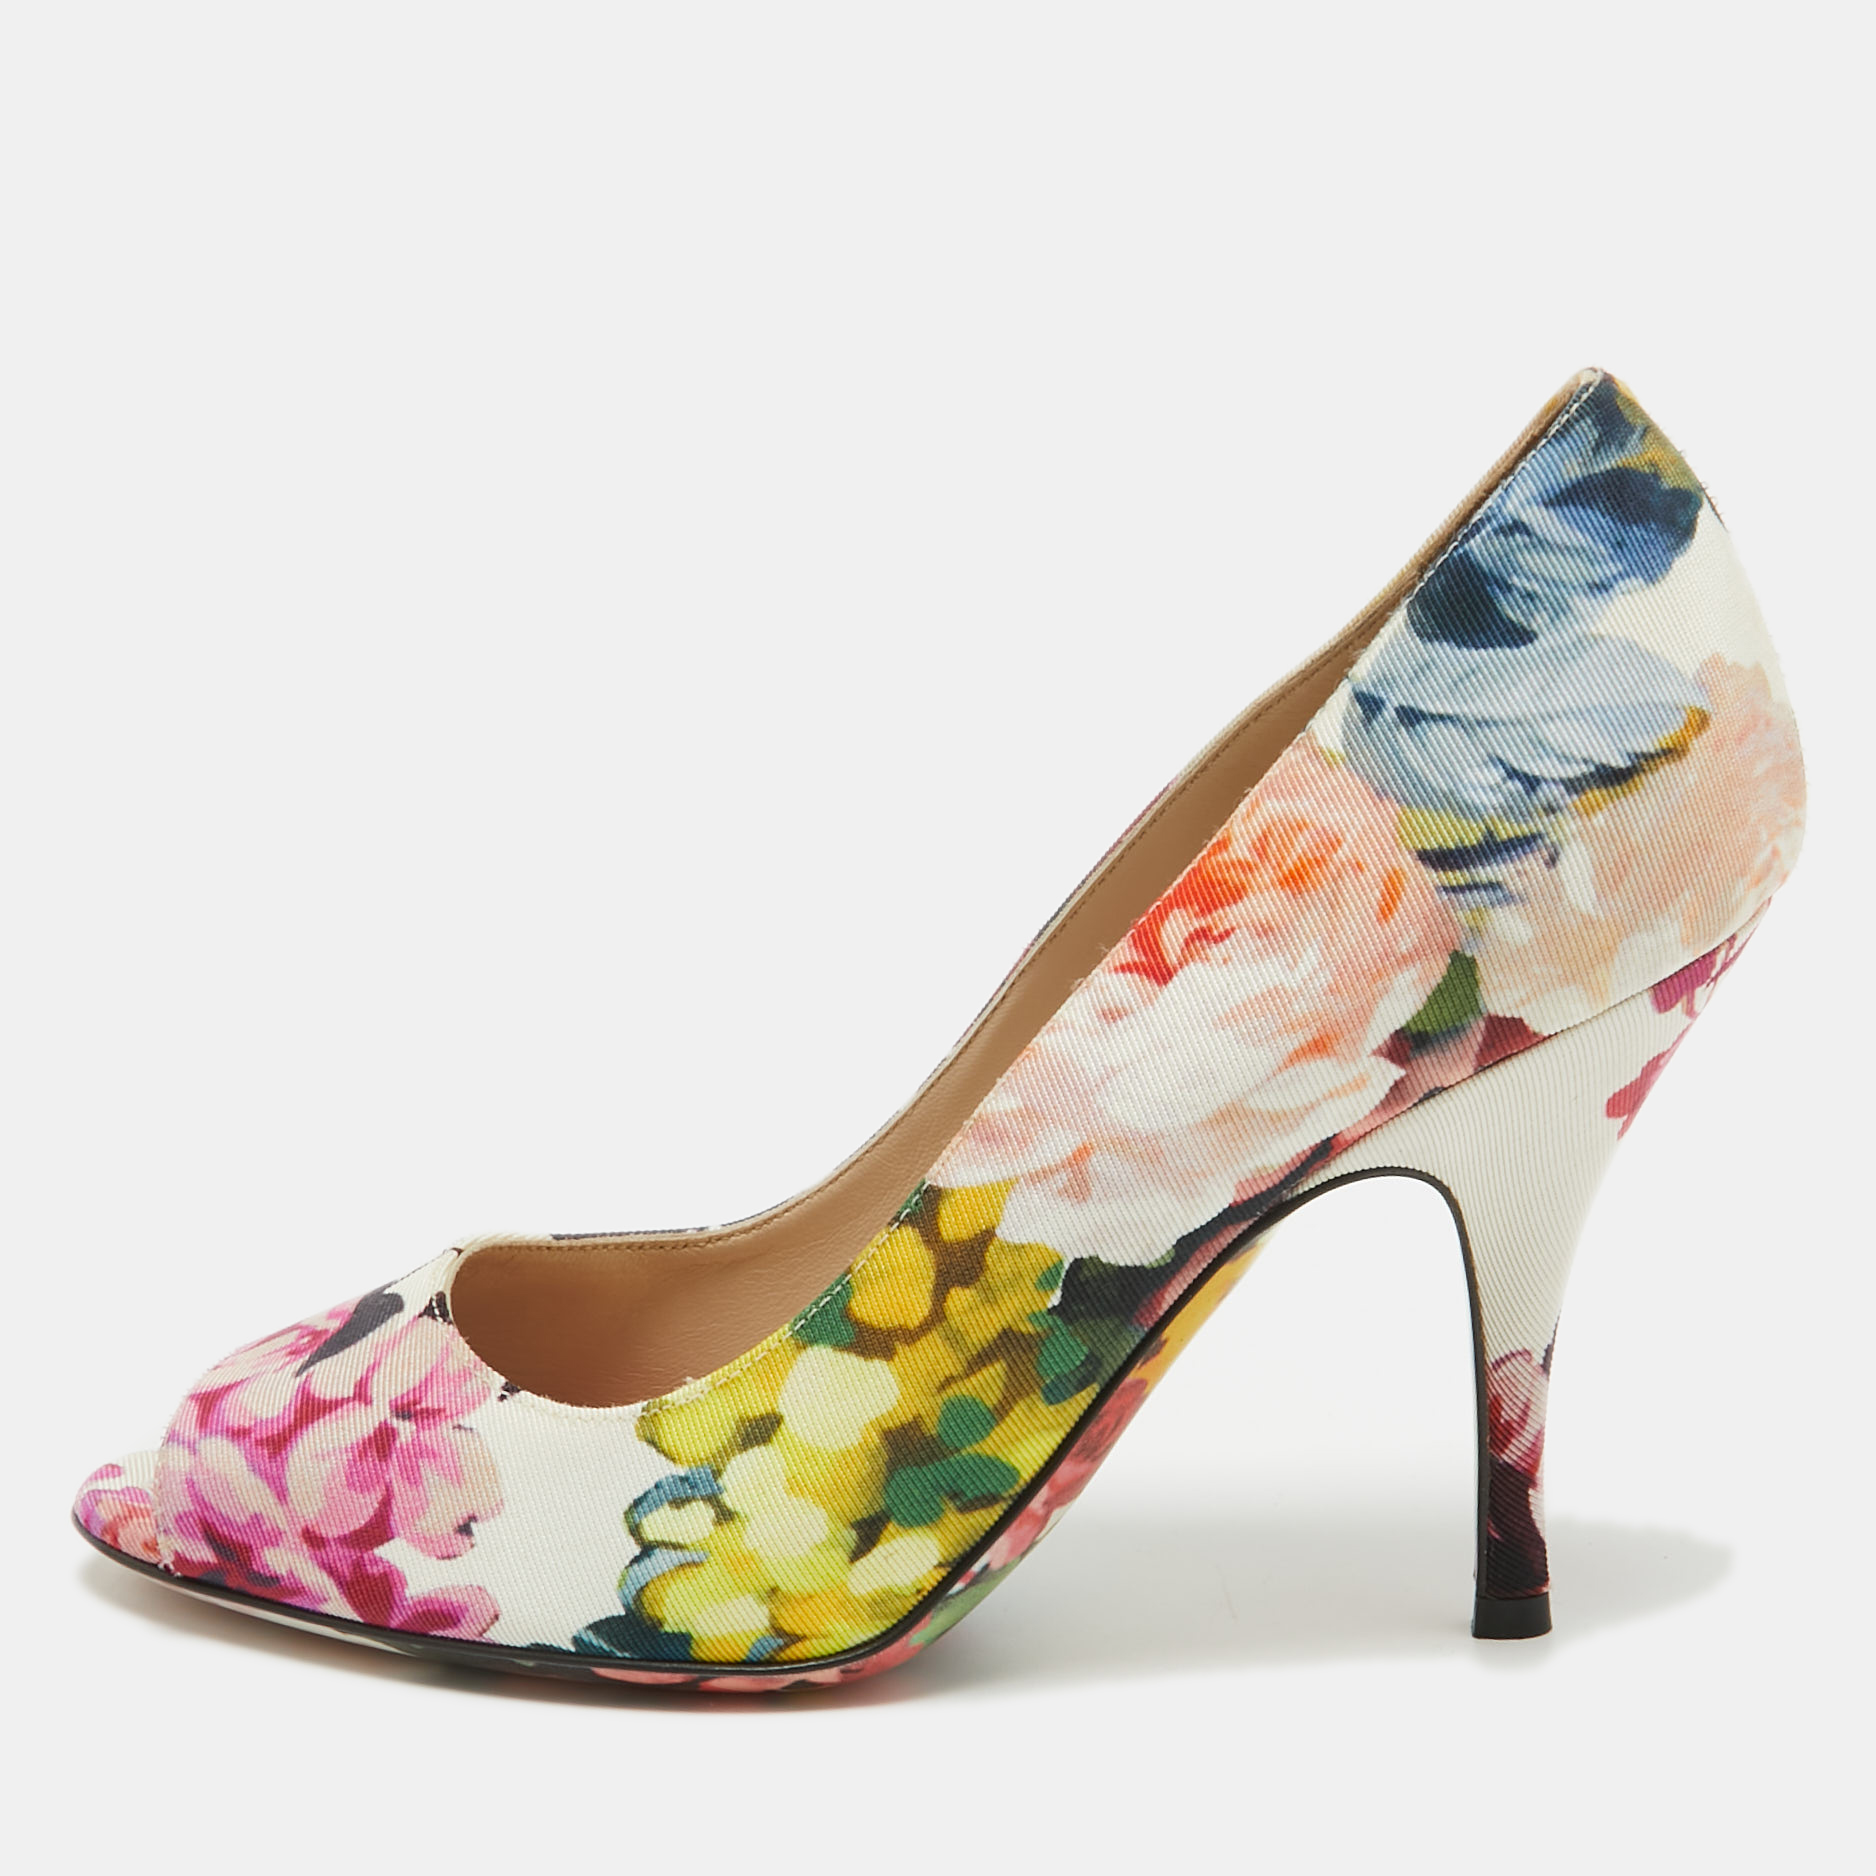 

Dolce & Gabbana Multicolor Canvas Floral Print Peep Toe Pumps Size